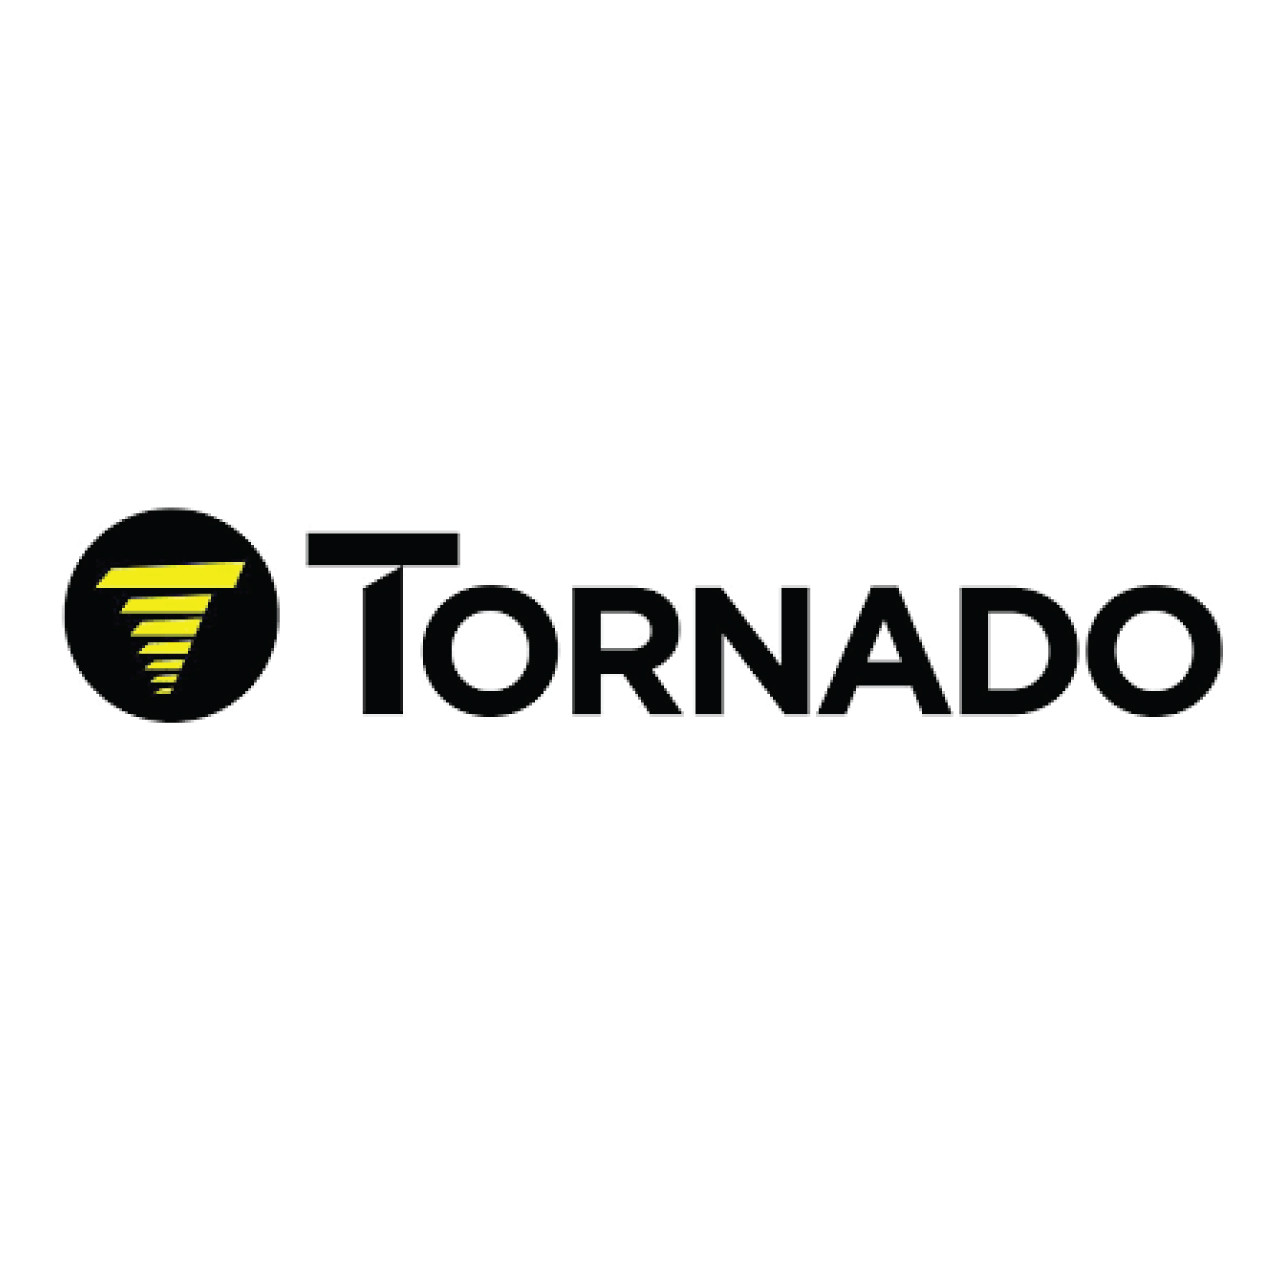 Tornado 026447 - SHOE